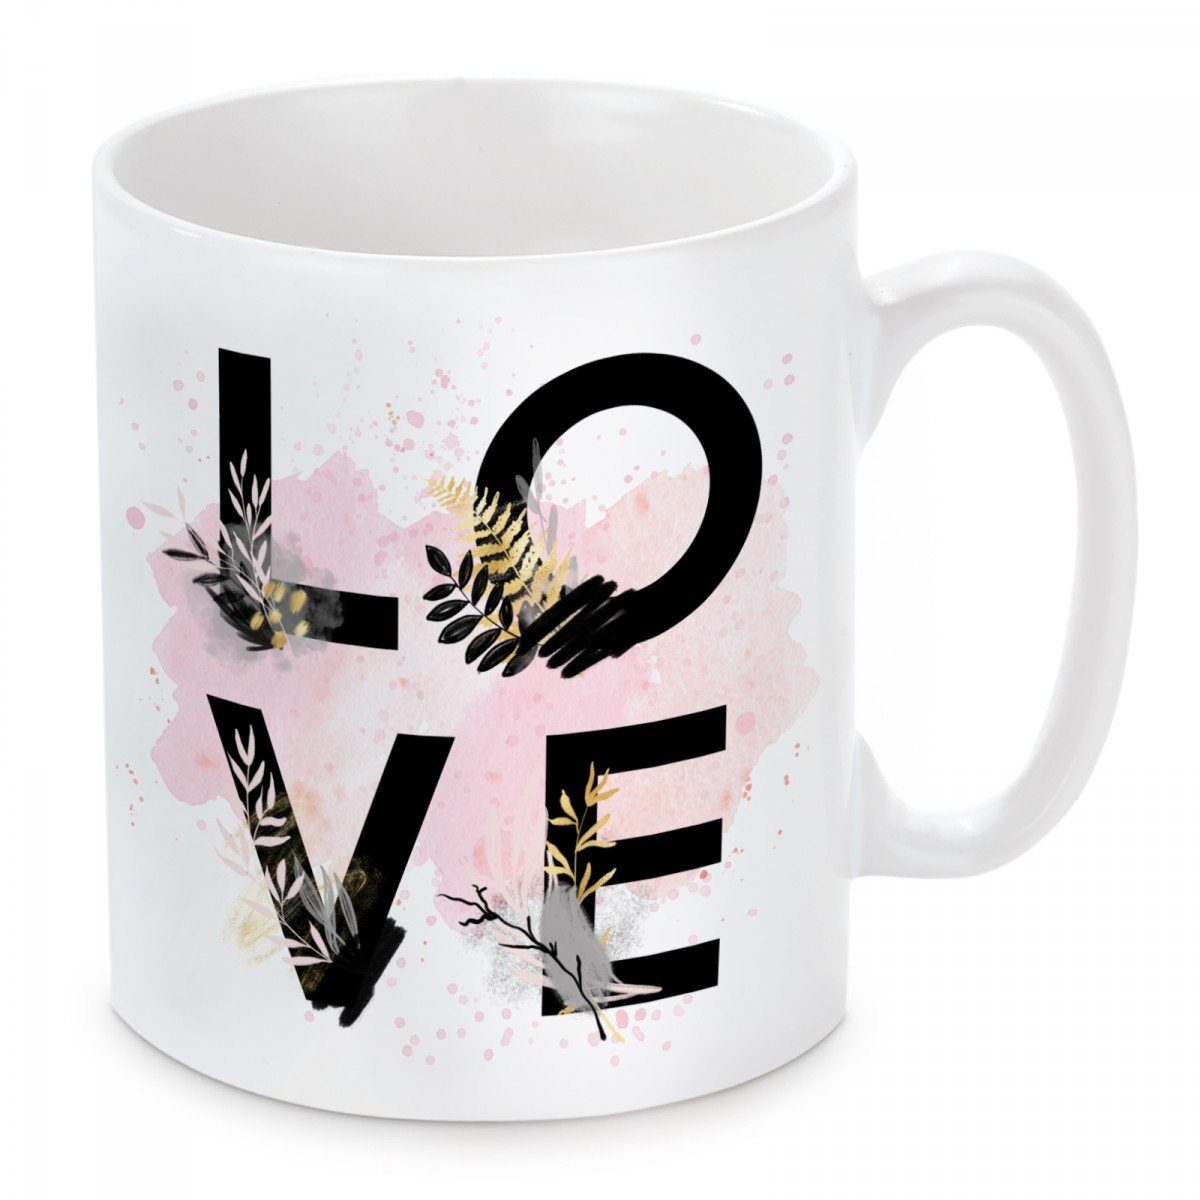 Neueste Produkte dieser Saison Herzbotschaft Tasse Kaffeebecher mit LOVE, Motiv Keramik, und Kaffeetasse mikrowellengeeignet spülmaschinenfest